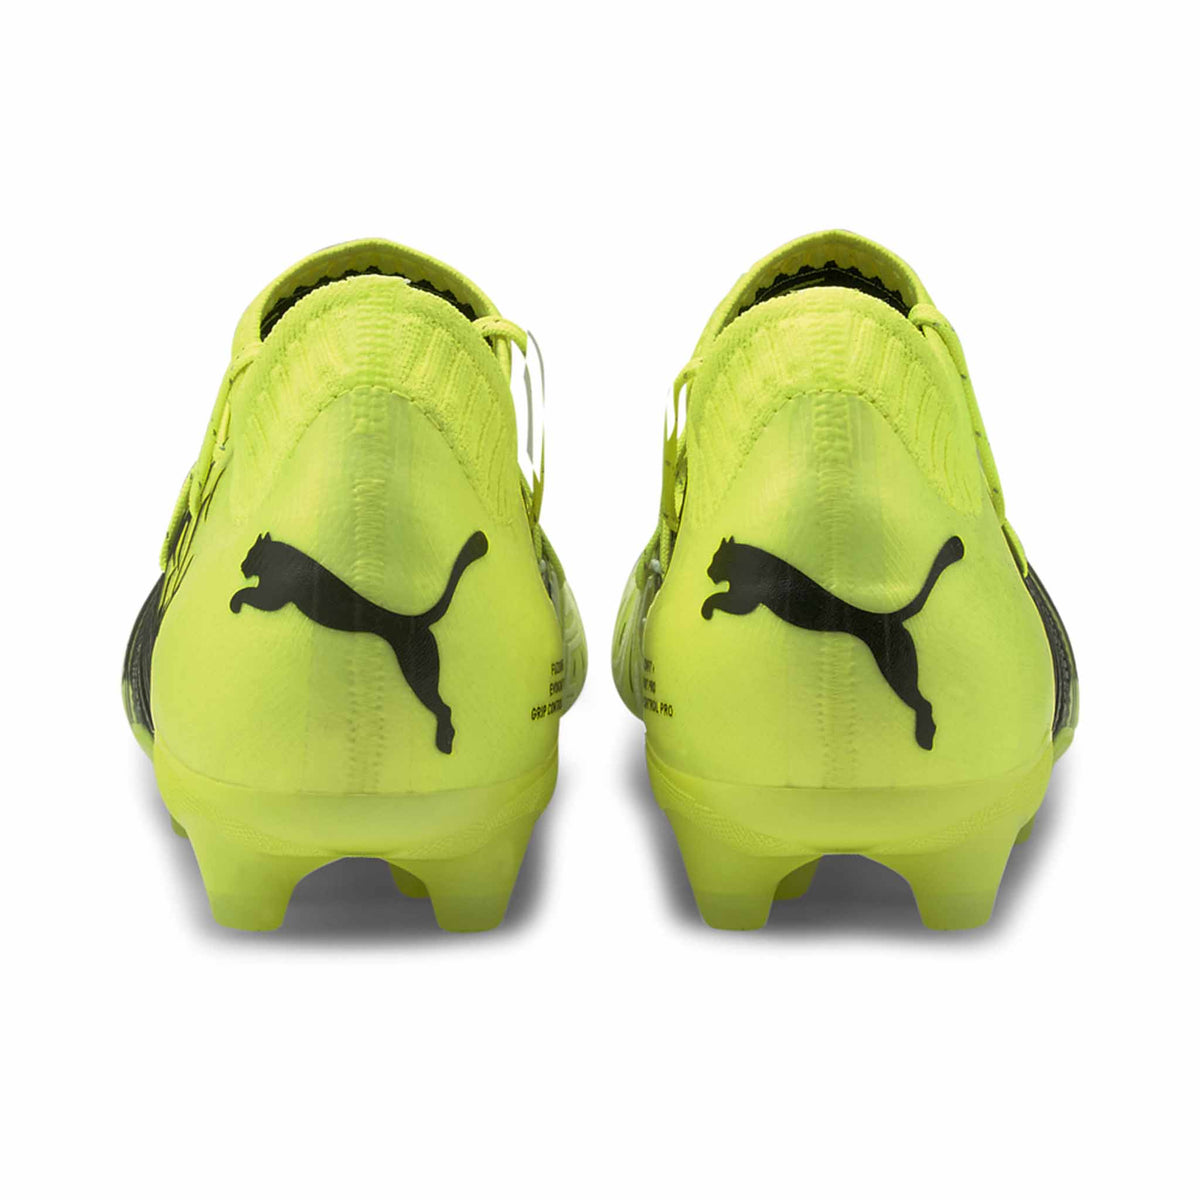 Puma Future Z 1.1 FG chaussures de soccer à crampons vue de dos